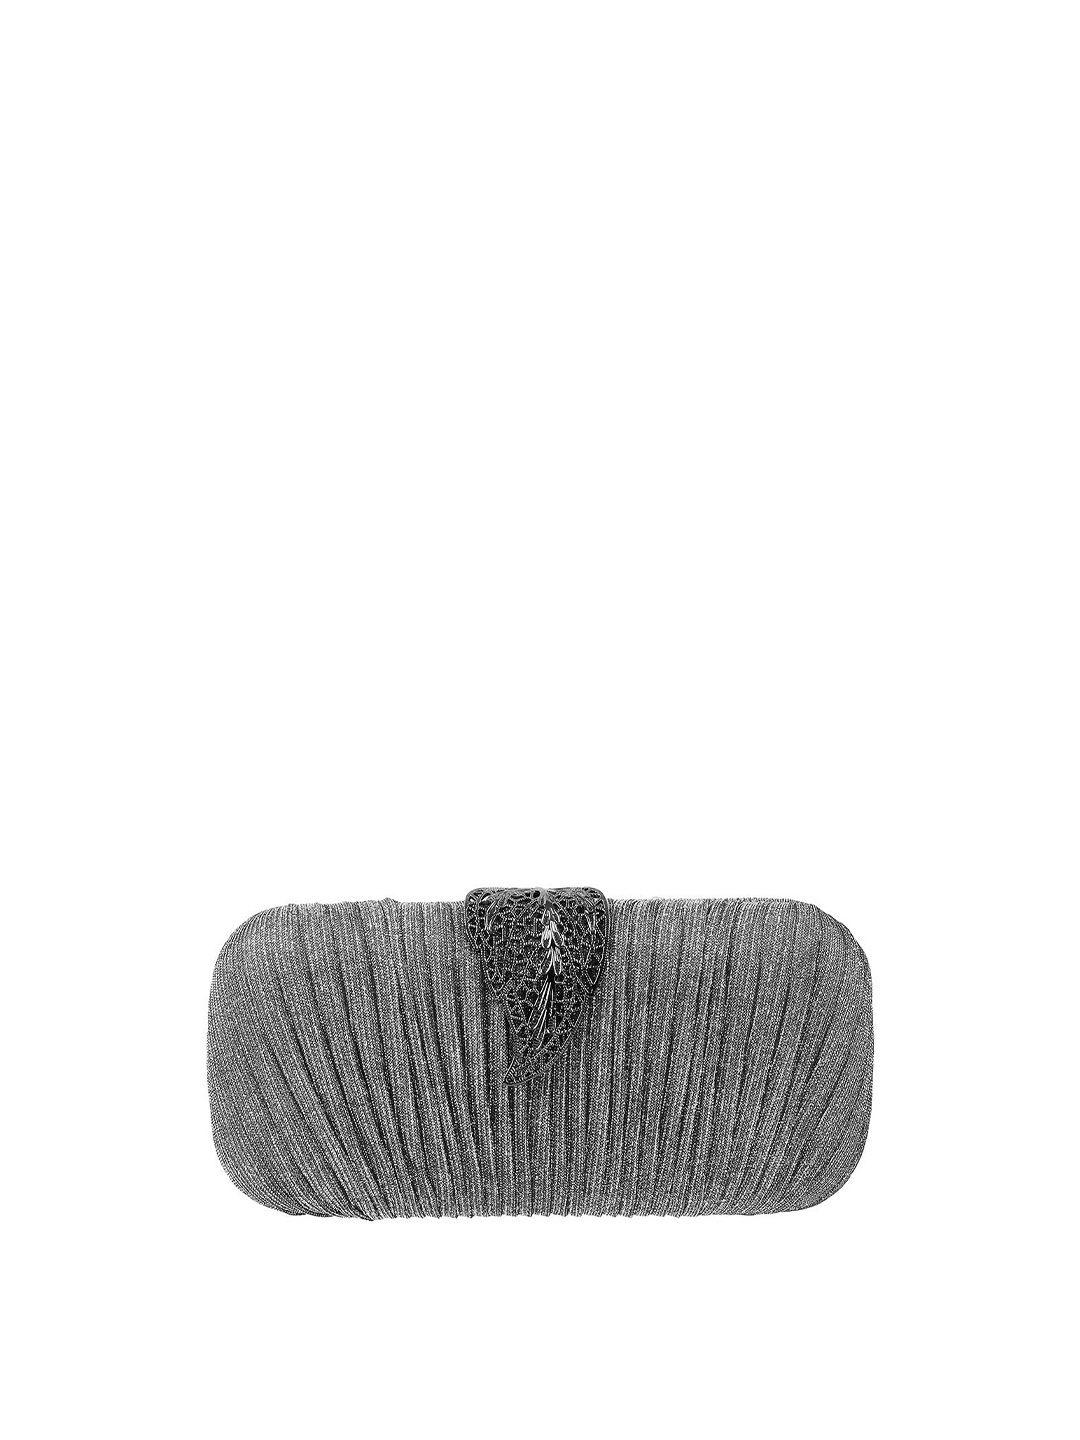 mochi women grey embellished clutch